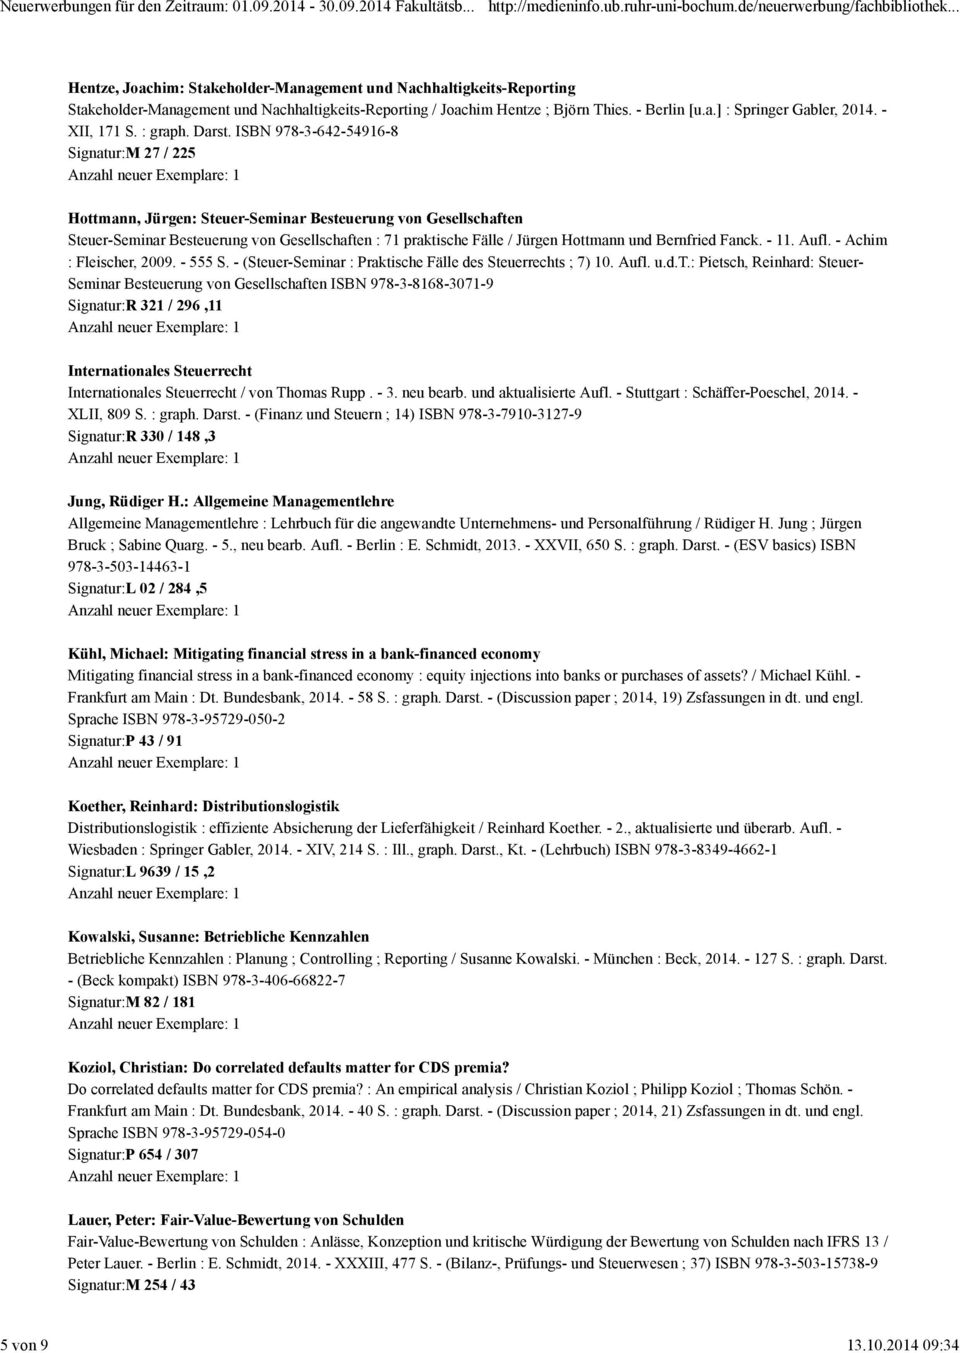 ISBN 978-3-642-54916-8 Signatur:M 27 / 225 Hottmann, Jürgen: Steuer-Seminar Besteuerung von Gesellschaften Steuer-Seminar Besteuerung von Gesellschaften : 71 praktische Fälle / Jürgen Hottmann und